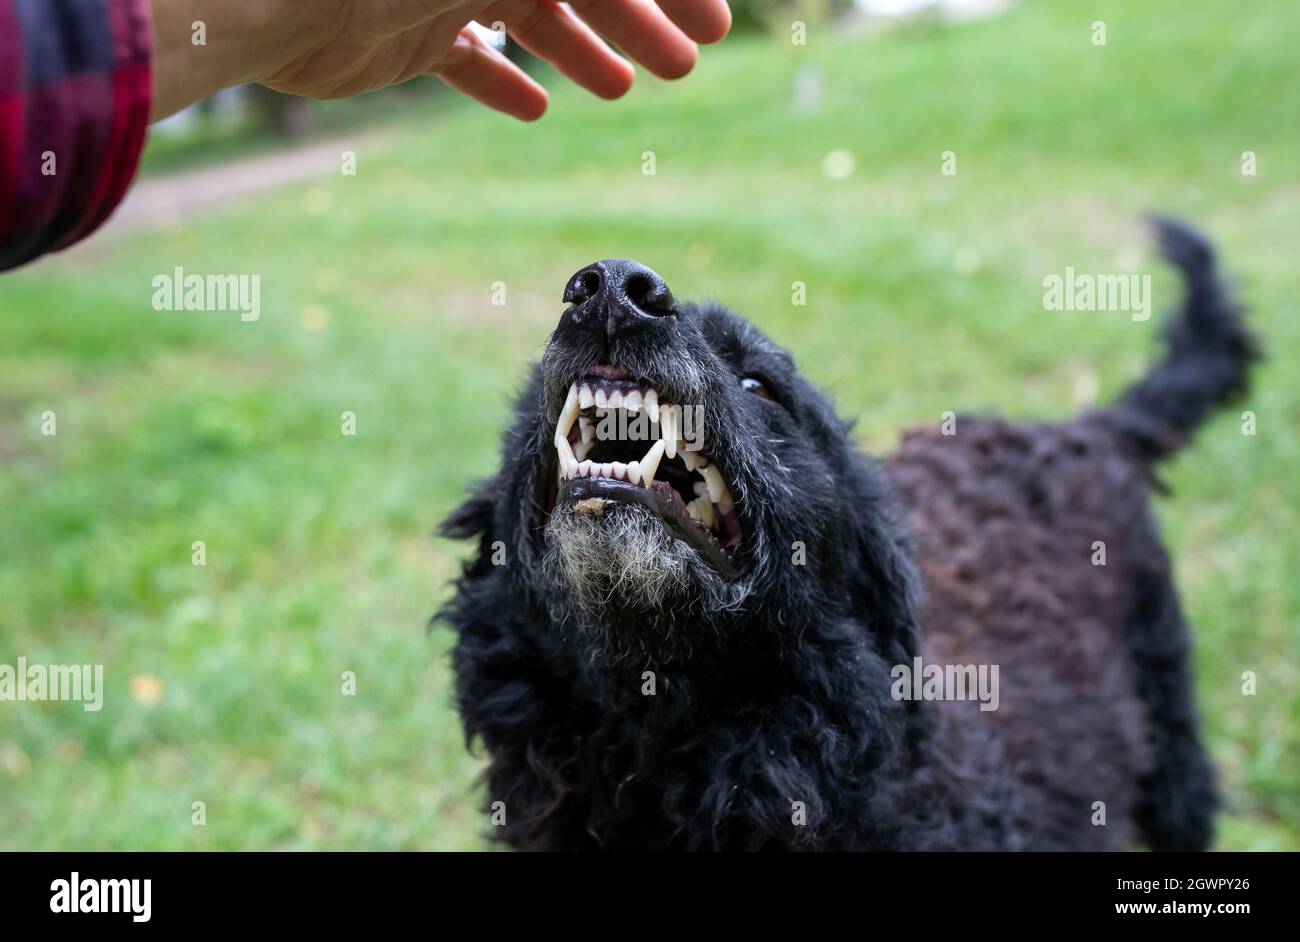 Primer plano de perro asegurado mostrando dientes a un extraño que se acerca con la mano al animal Foto de stock